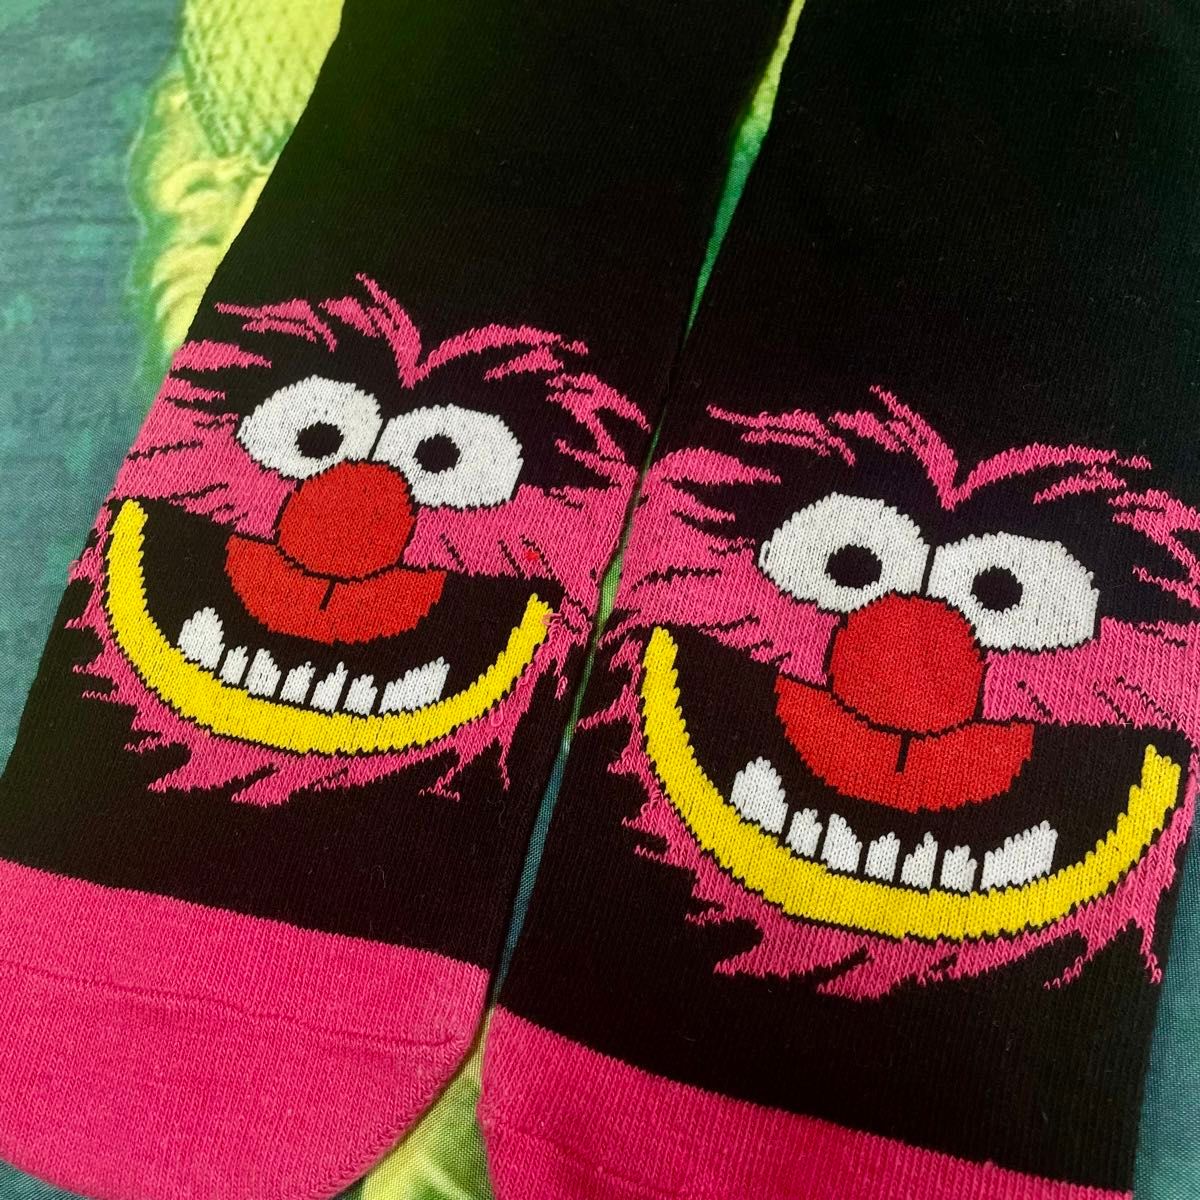 マペットショー Animal ソックス The Muppet Show アニマル 靴下 Socks